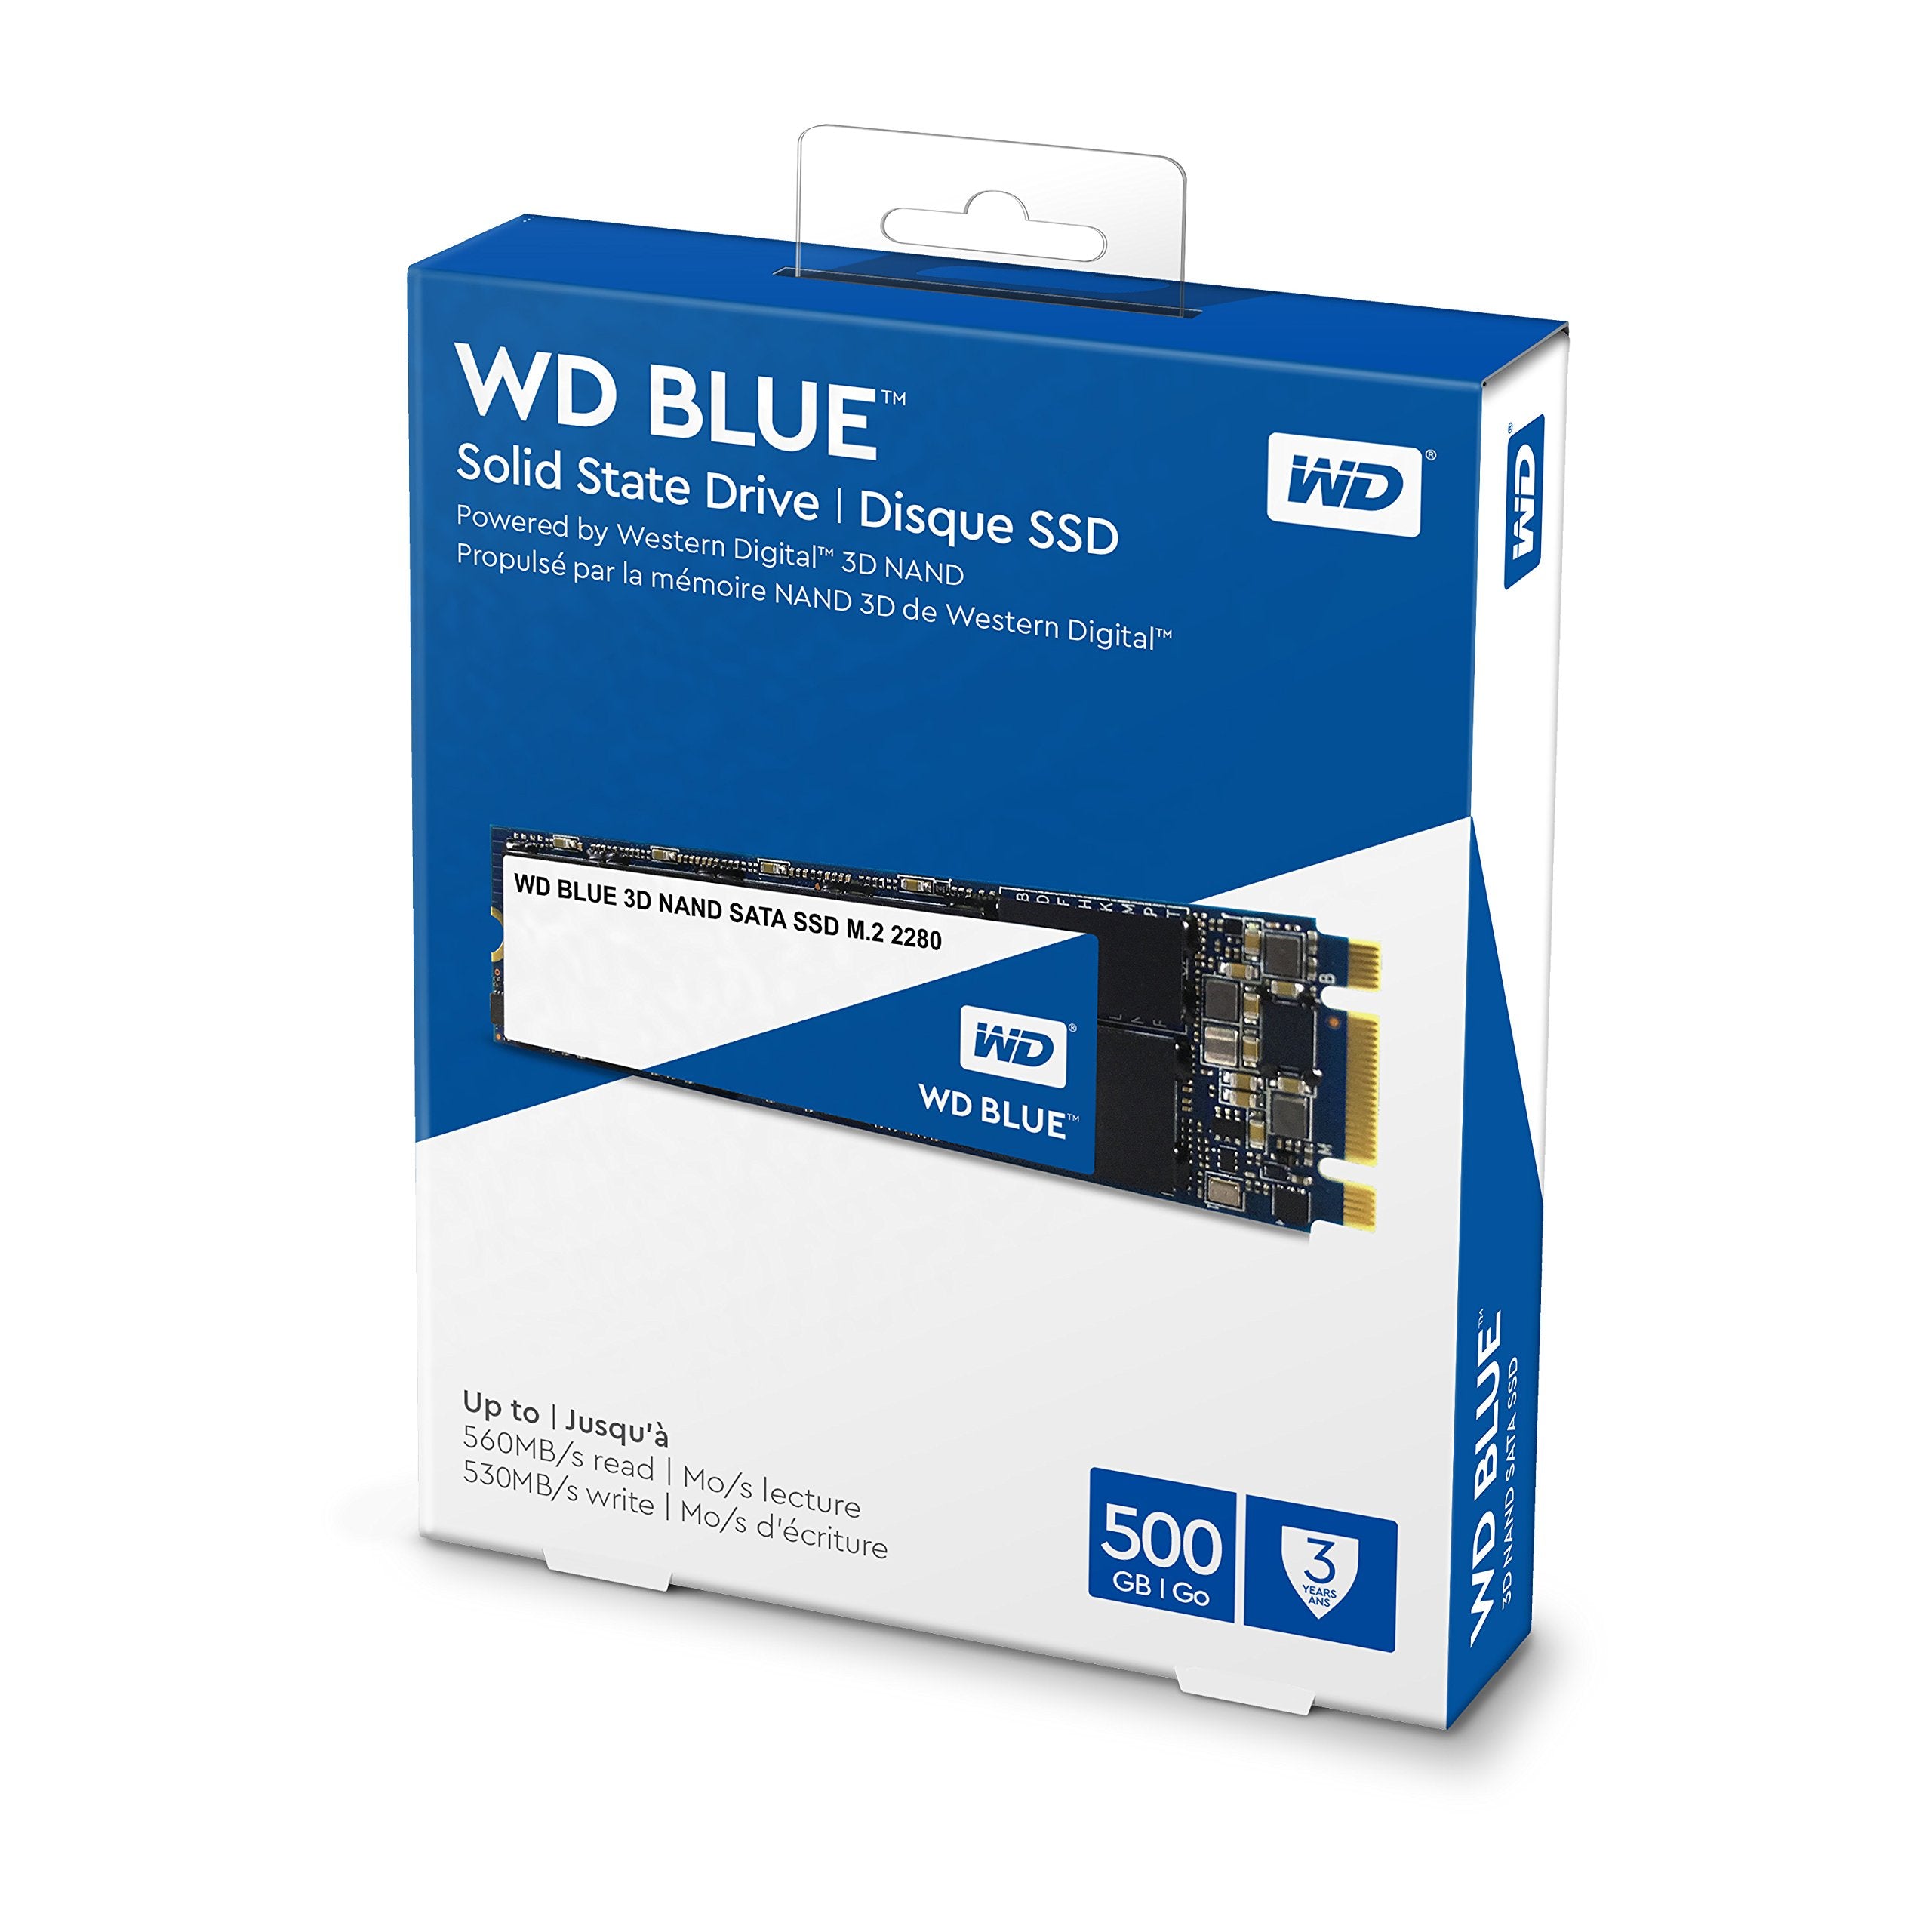 WD Blue 3D NAND 250GB Internal PC SSD - SATA III 6 Gb/s, M.2 2280, Up to 550 MB/s - WDS250G2B0B